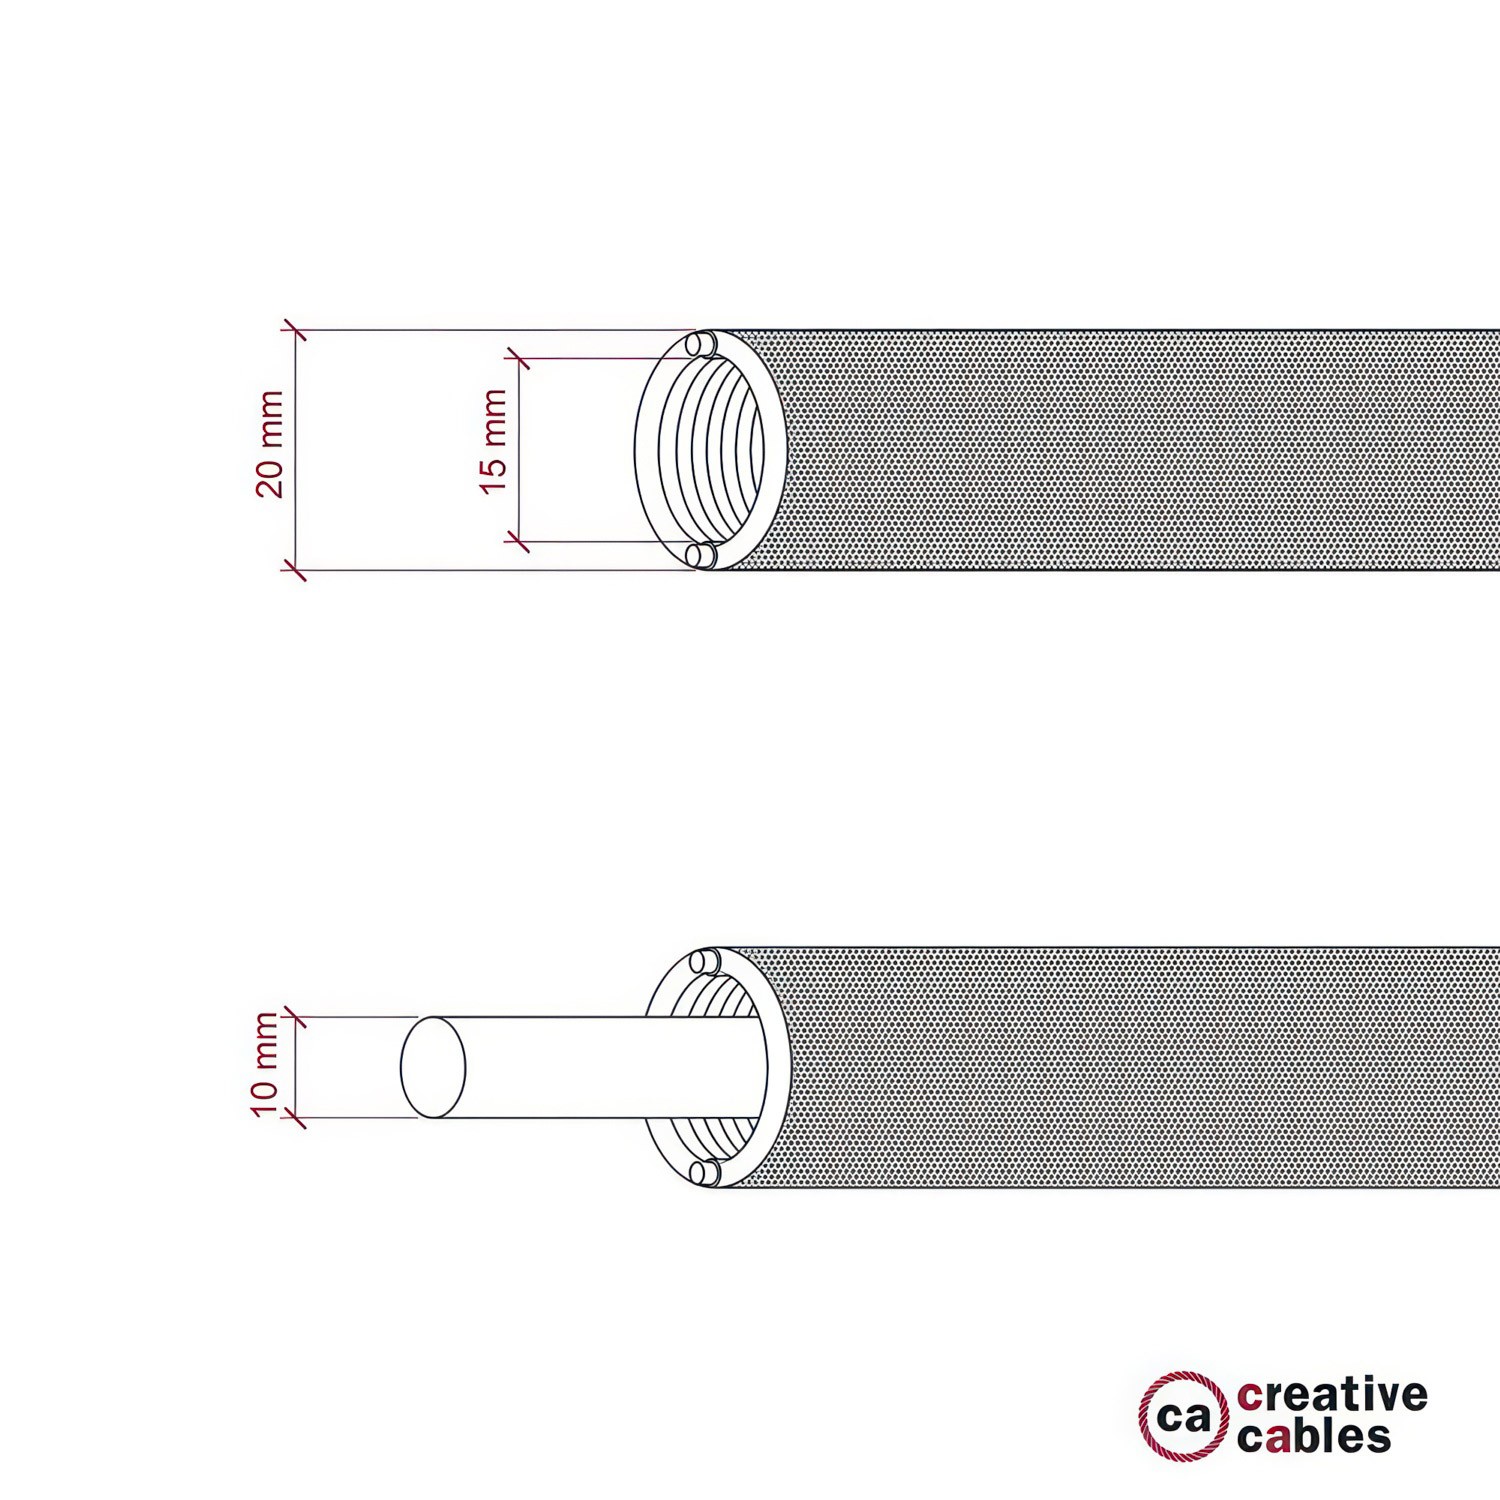 Tubo flexible Creative-Tube, revestido de tejido en Rayon Negro RM04, diámetro 20 mm